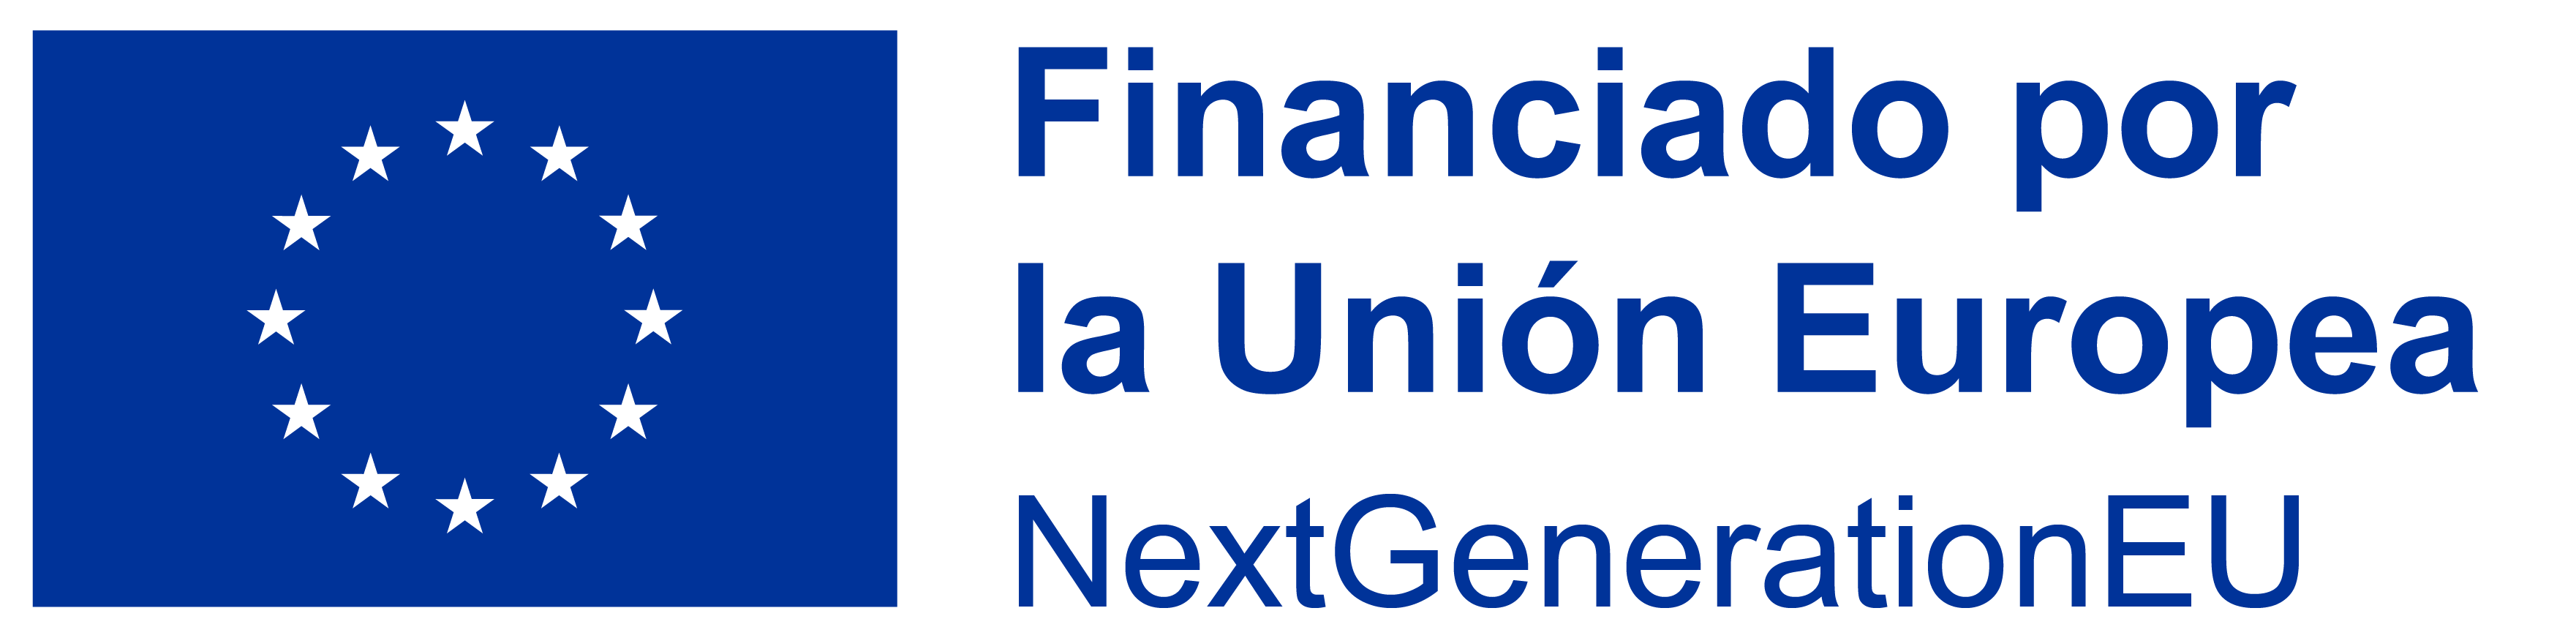 Logo financiado por la UE nextGenerationEU